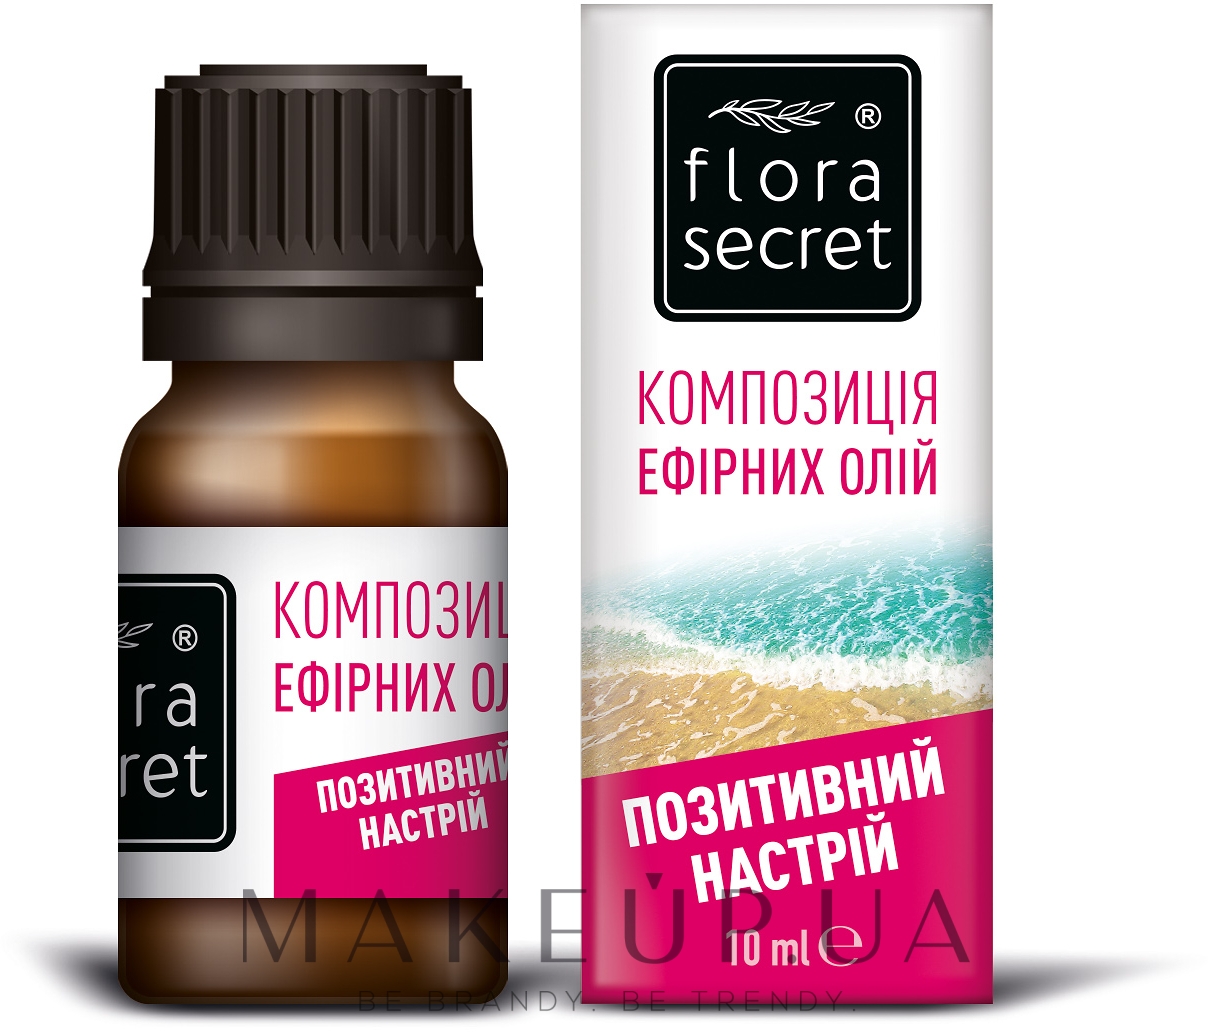 Суміш ефірних олій "Позитивний настрій" - Flora Secret — фото 10ml